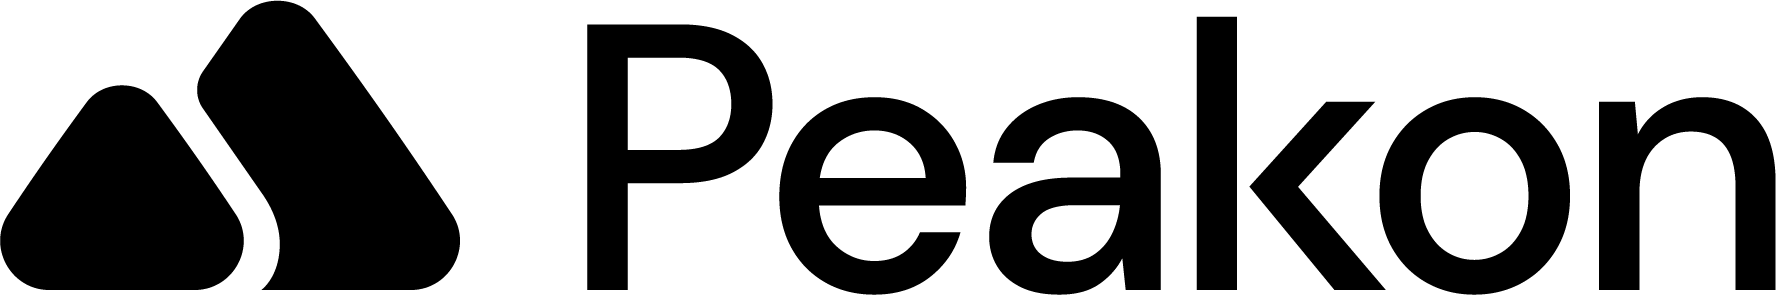 Peakon 2020_Black_Logo.png